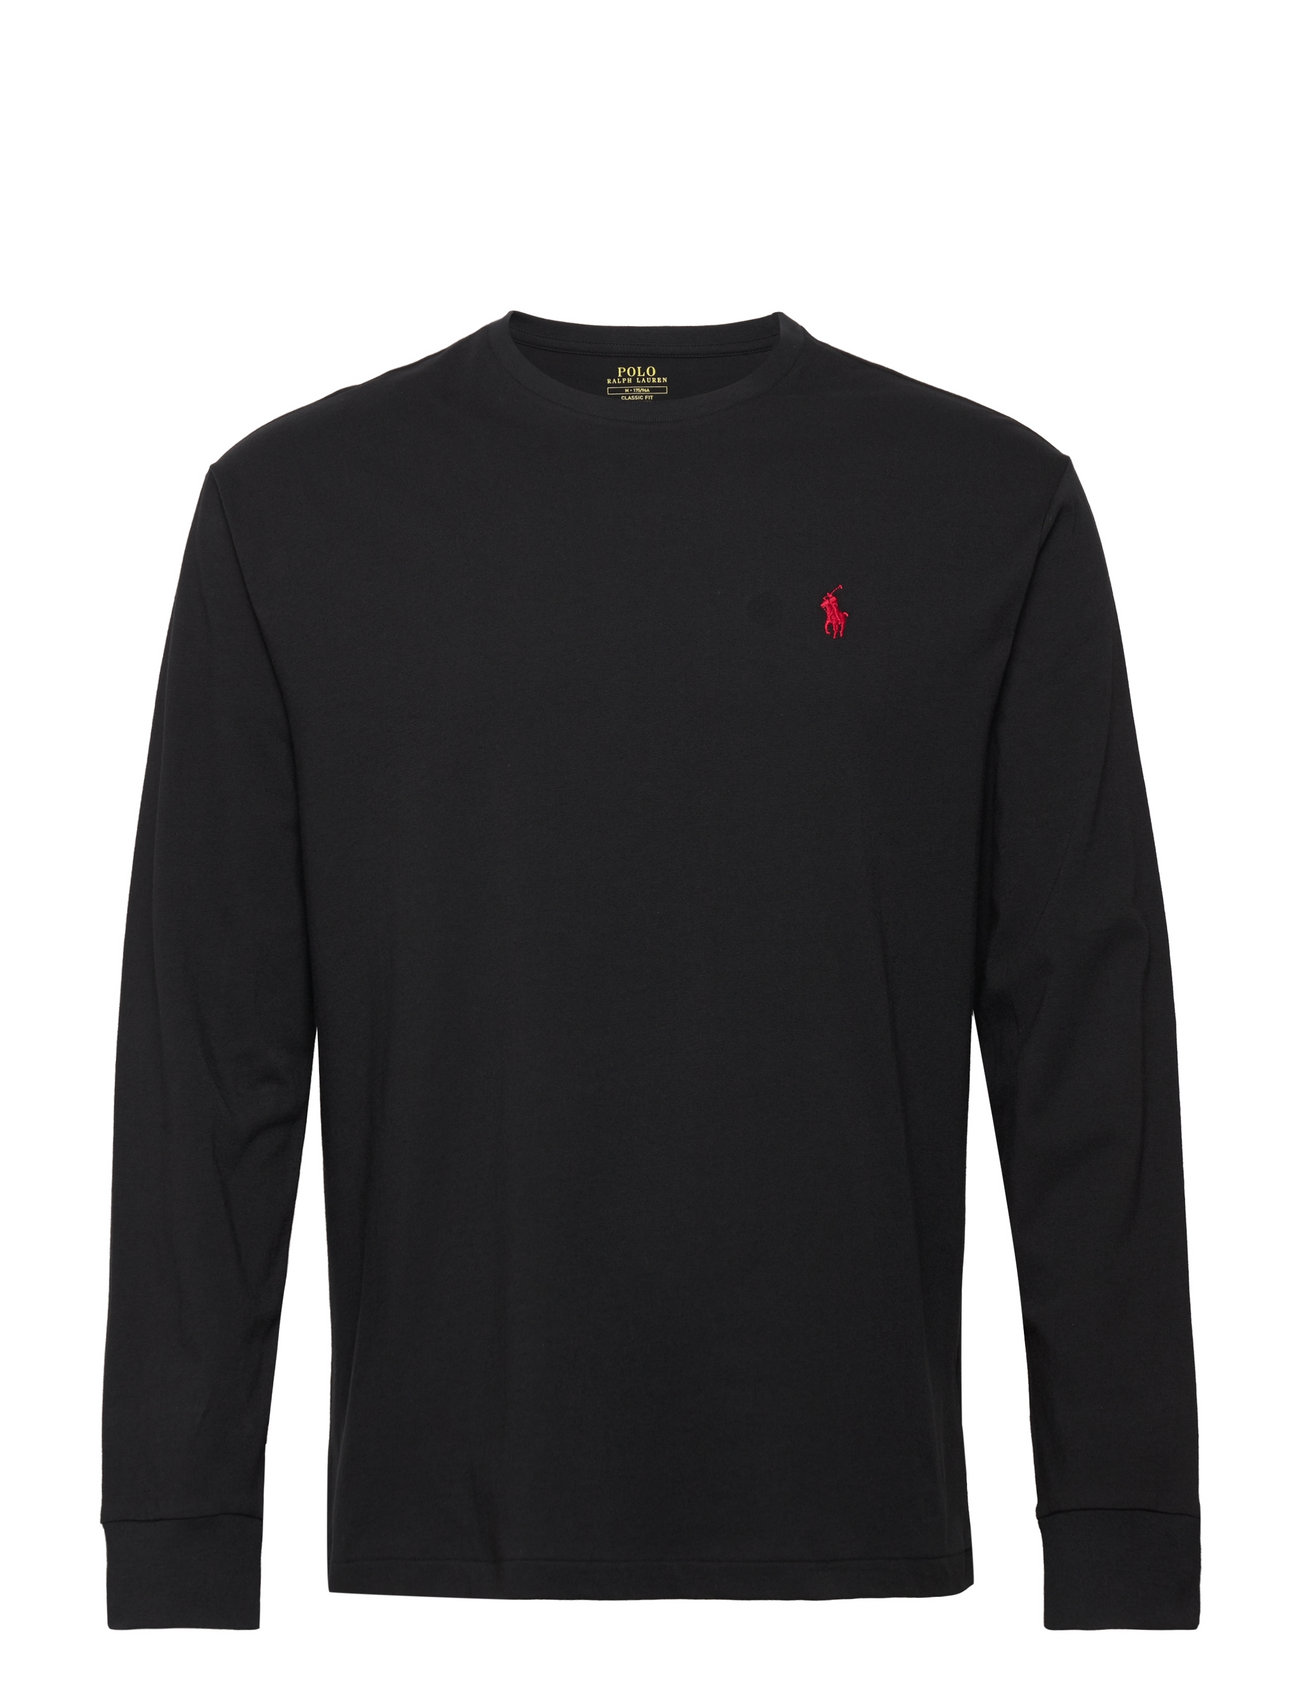 26/1 Jersey-Lsl-Tsh No Pkt Tops T-Langærmet Skjorte Black Polo Ralph Lauren